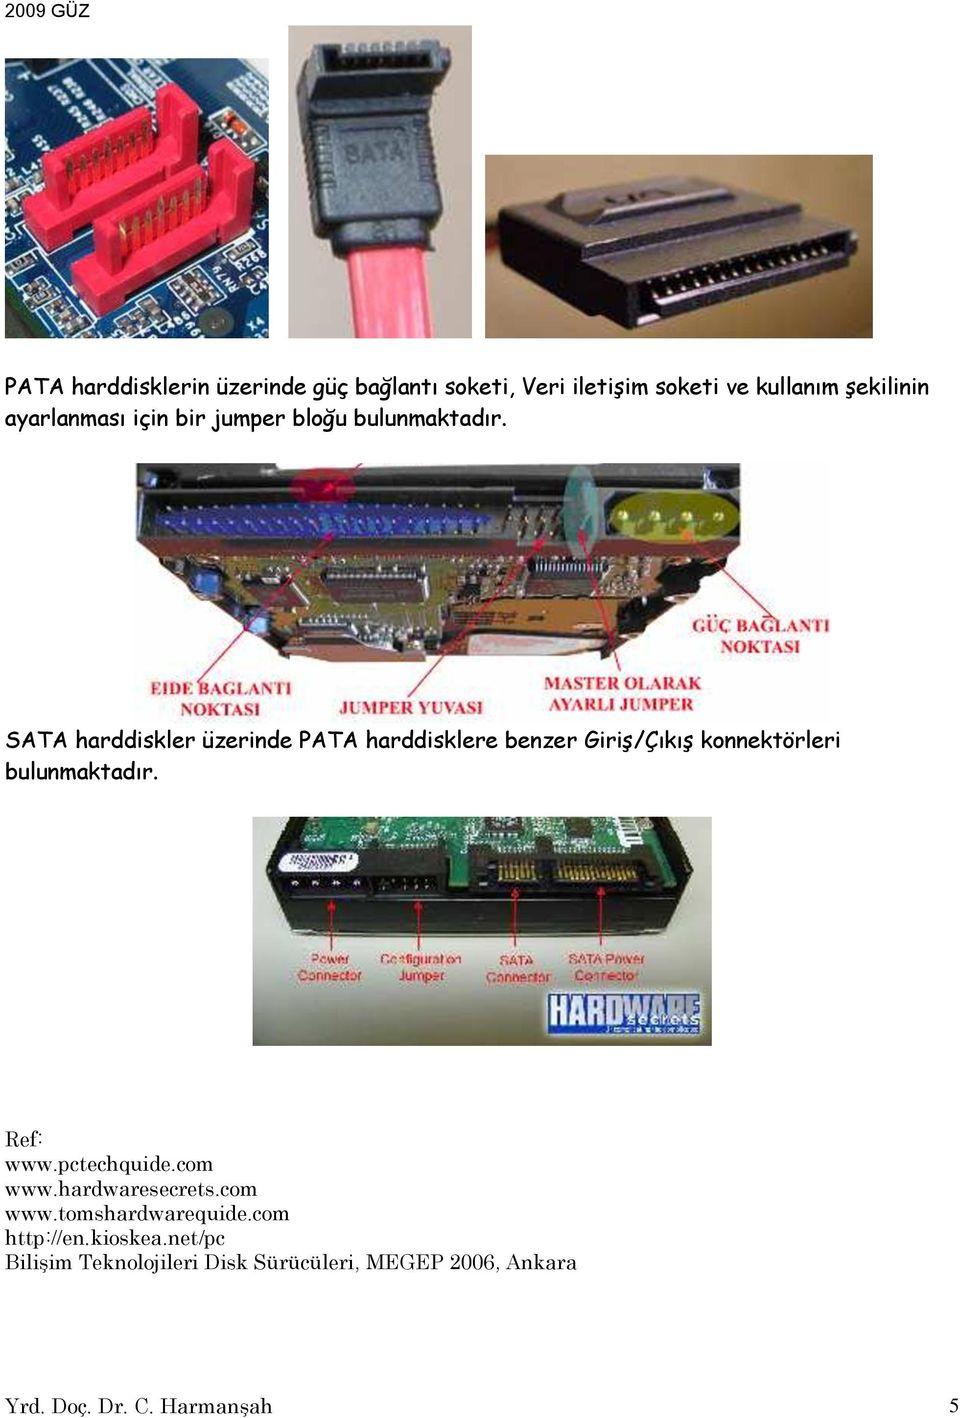 SATA harddiskler üzerinde PATA harddisklere benzer Giriş/Çıkış konnektörleri bulunmaktadır. Ref: www.